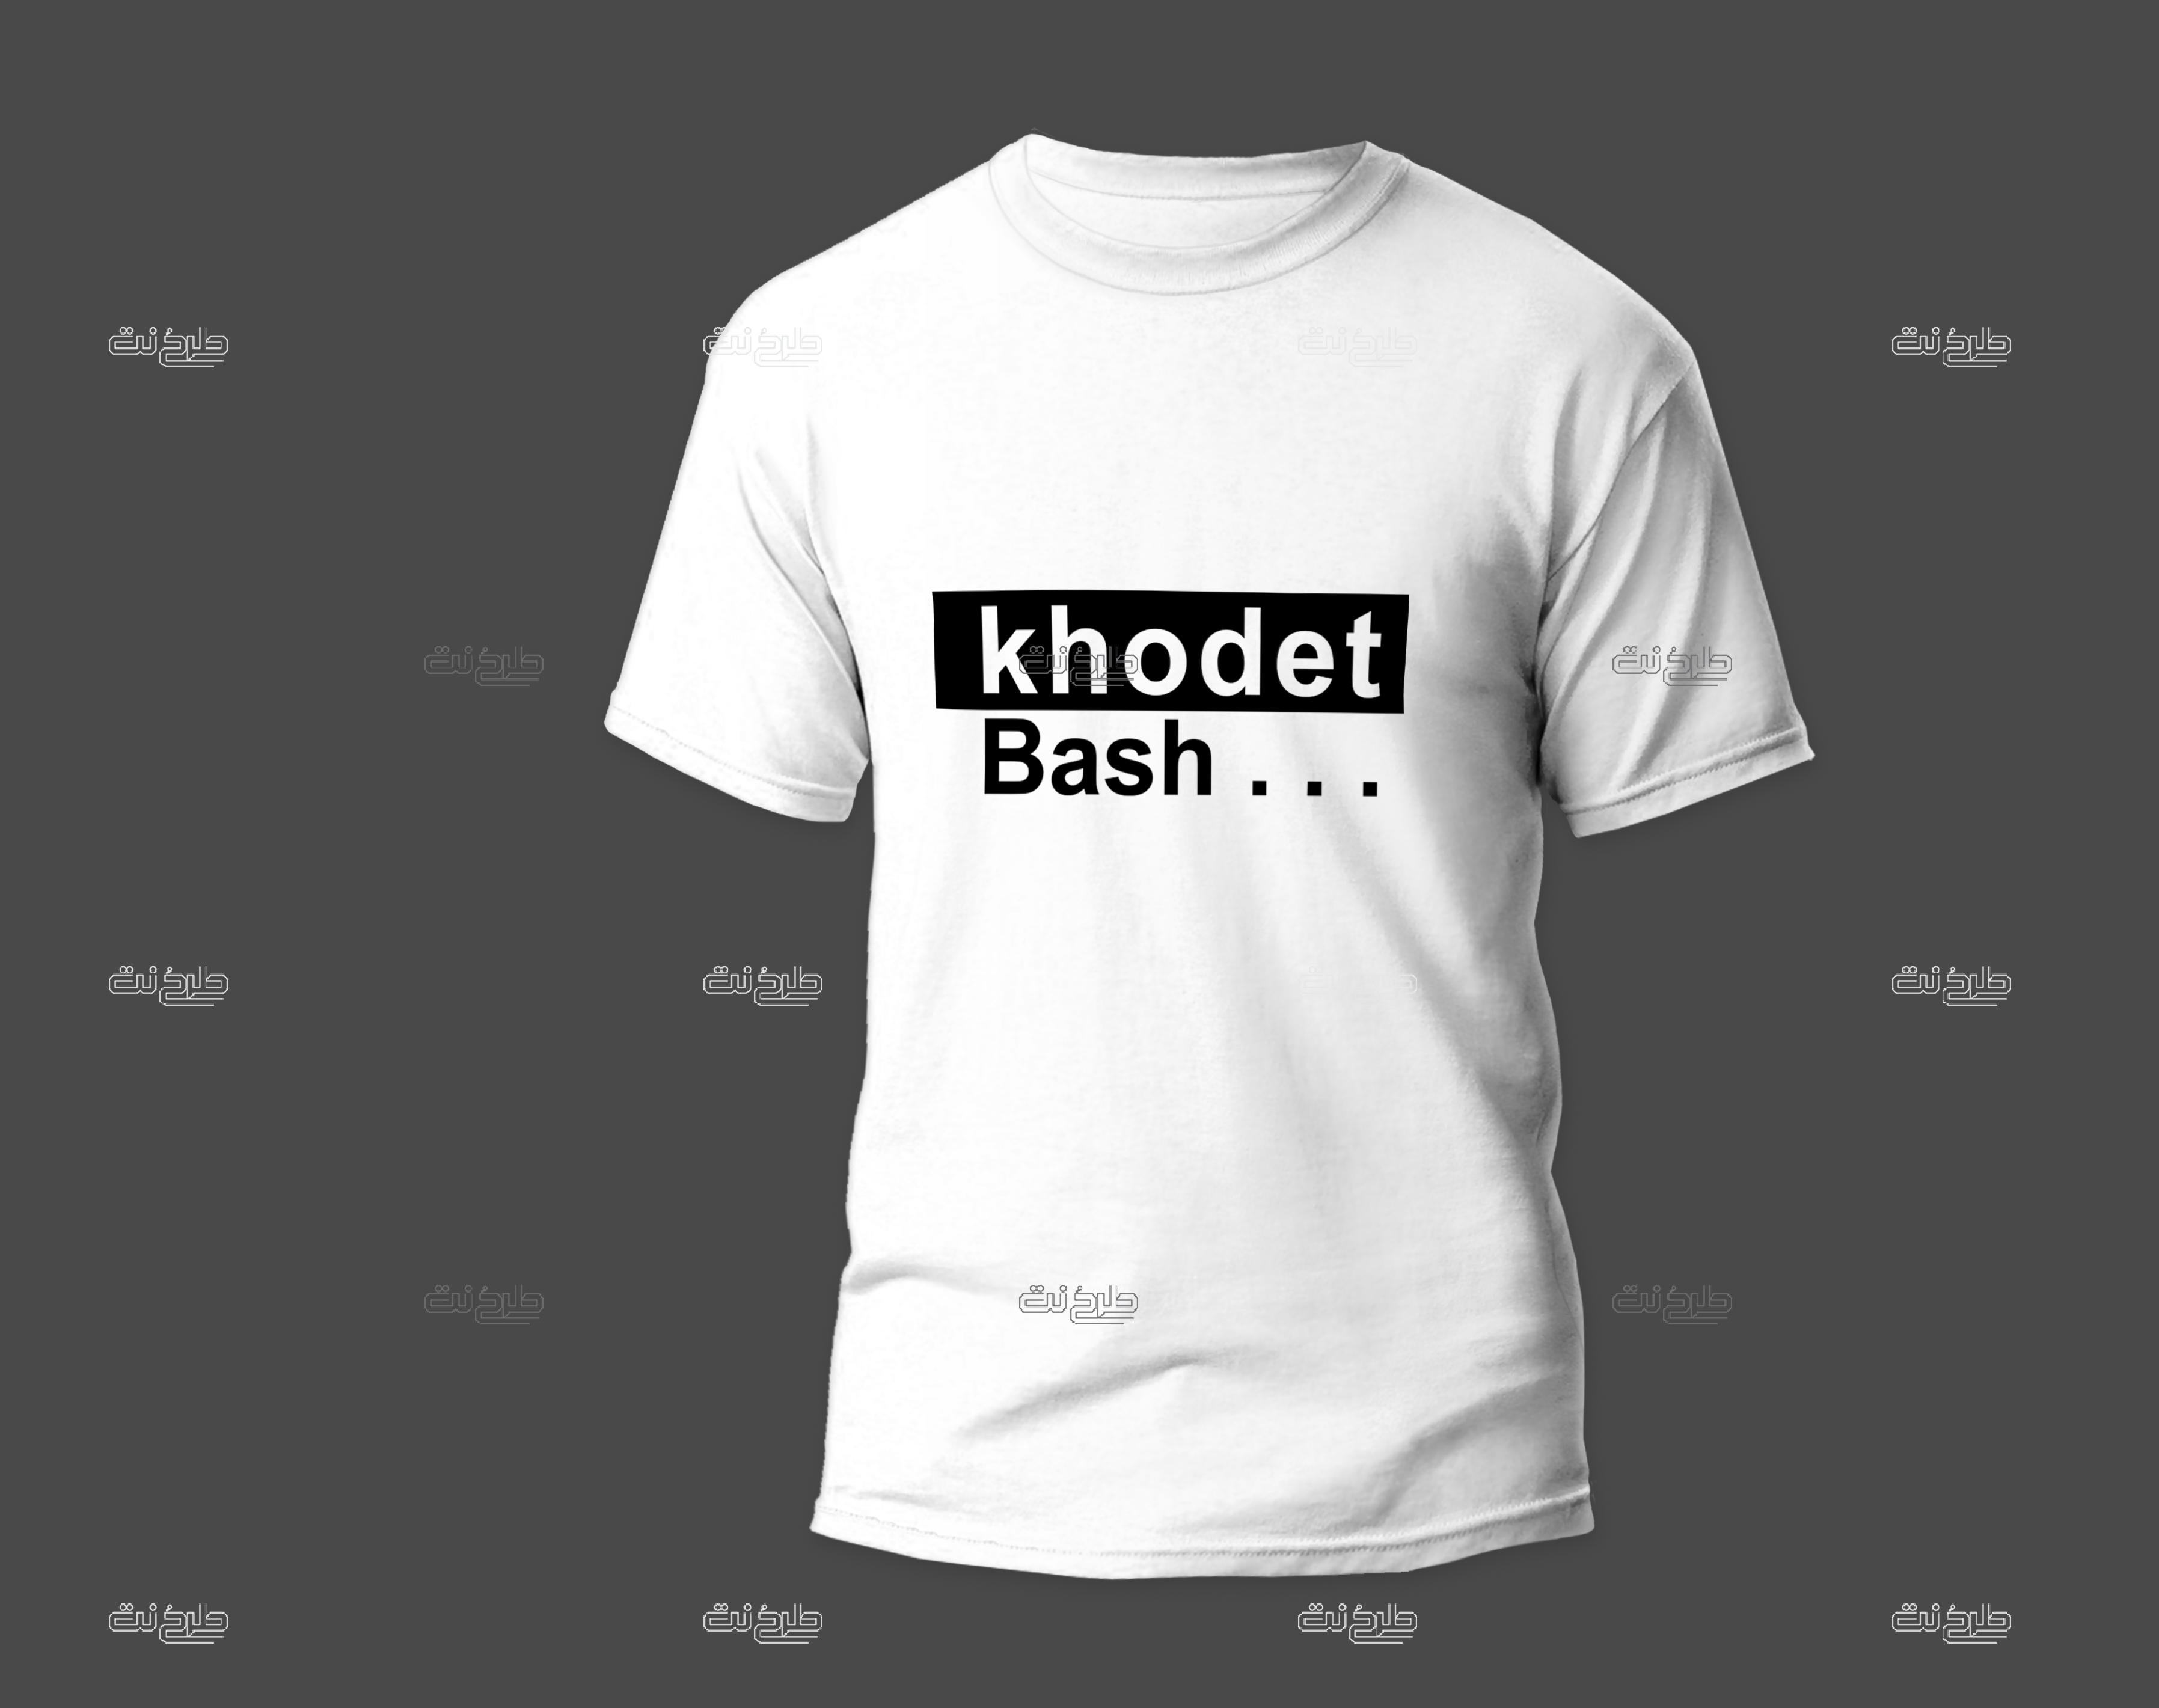 دانلود طرح لایه باز تیشرت با متن "Khodet Bash"